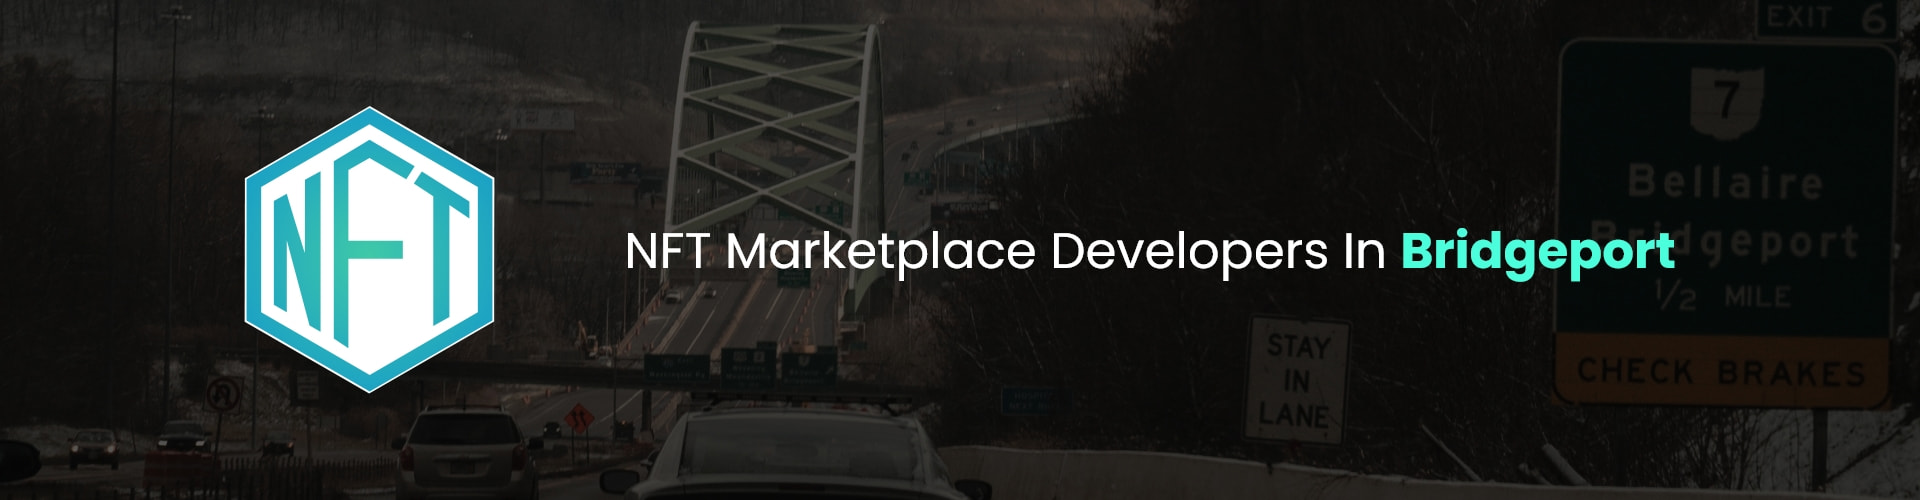 hire nft marketplace developers in bridgeport